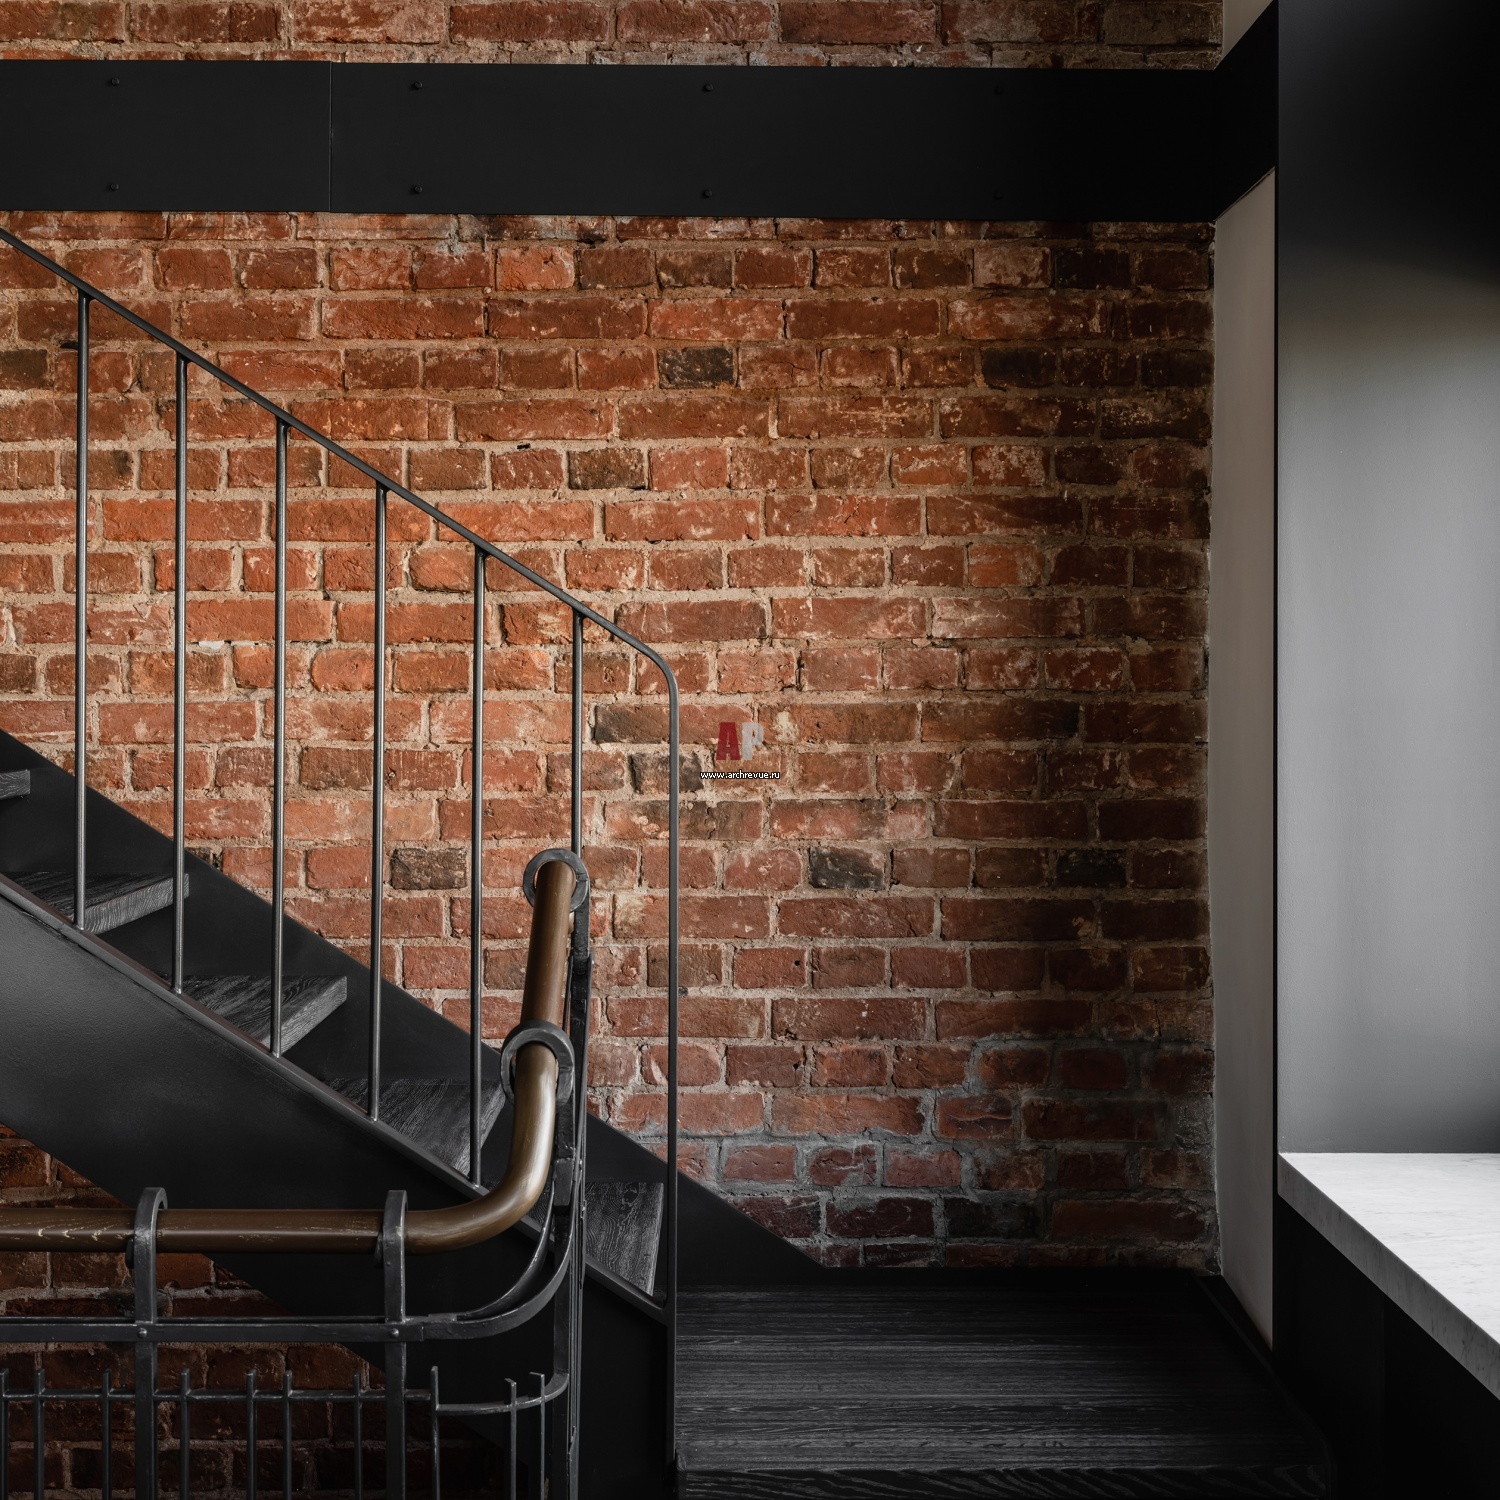 Фото лестницы пентхауса в стиле лофт